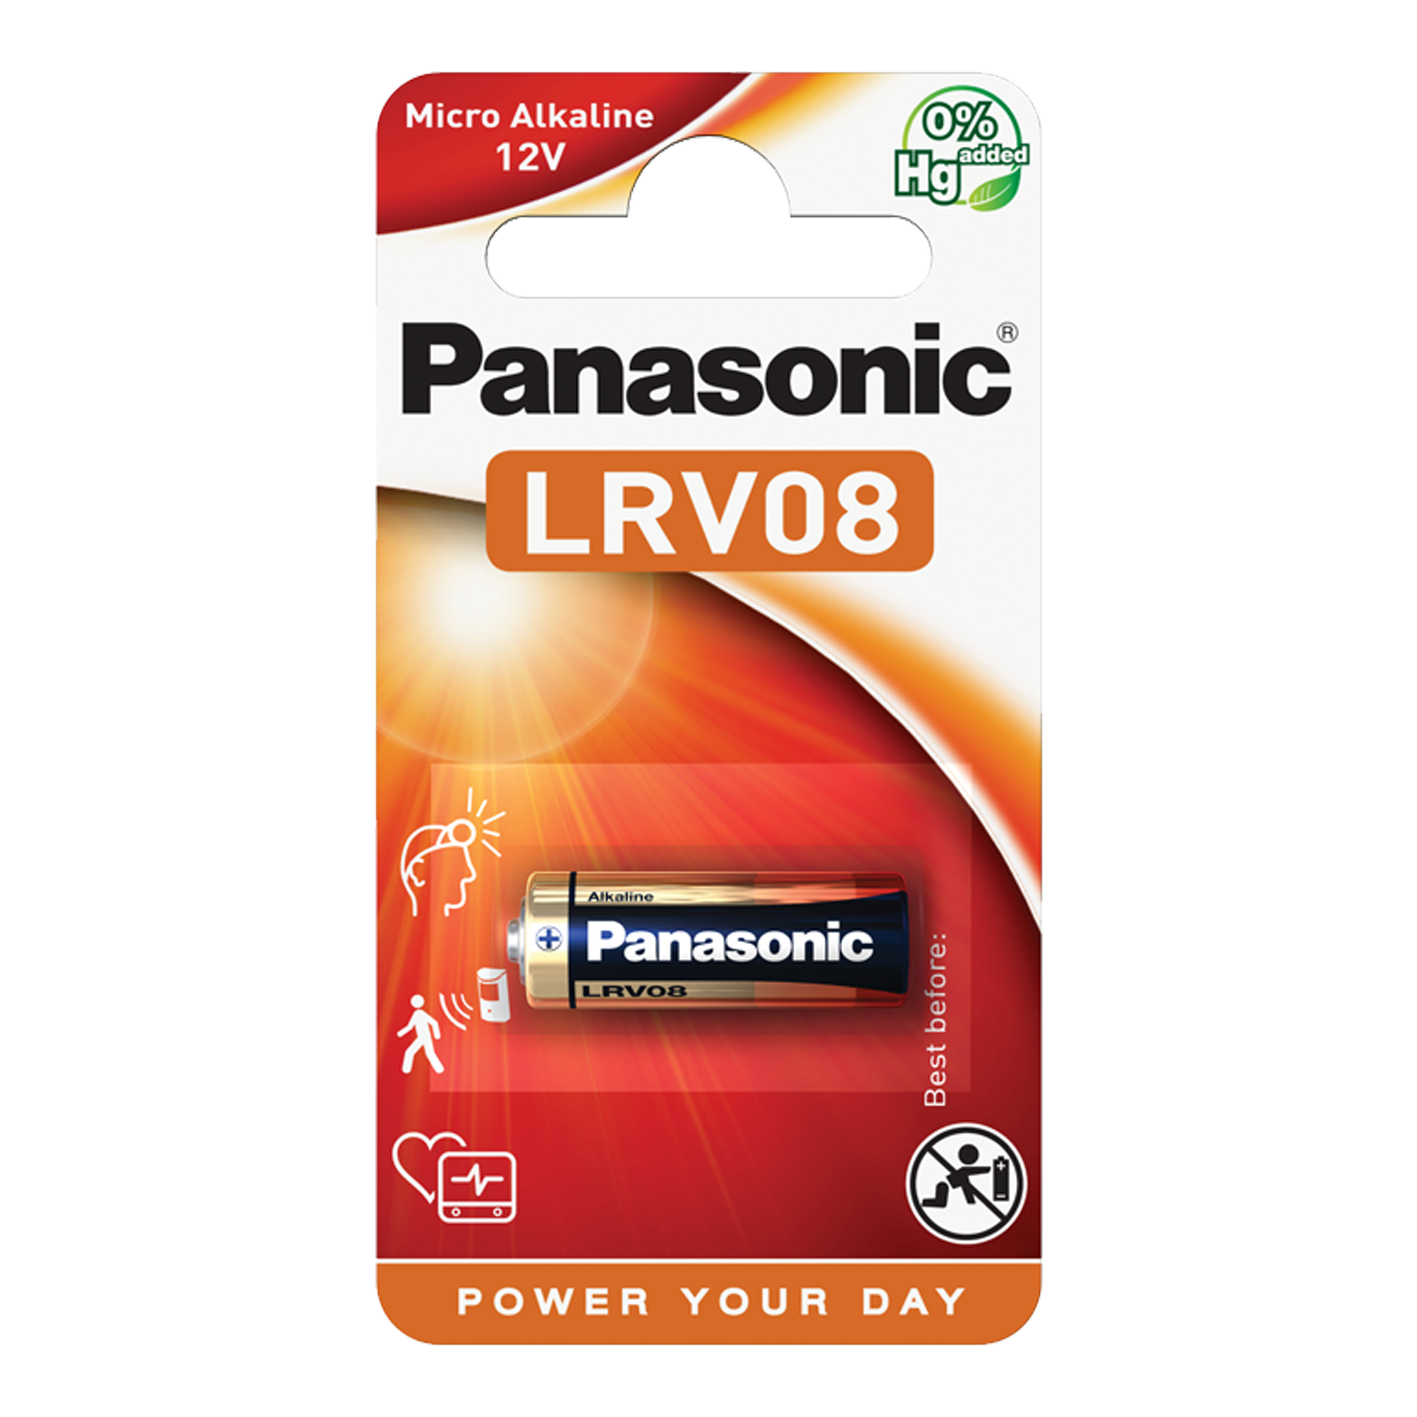 Panasonic LRV08 - Batería de 12 V, 1 unidad